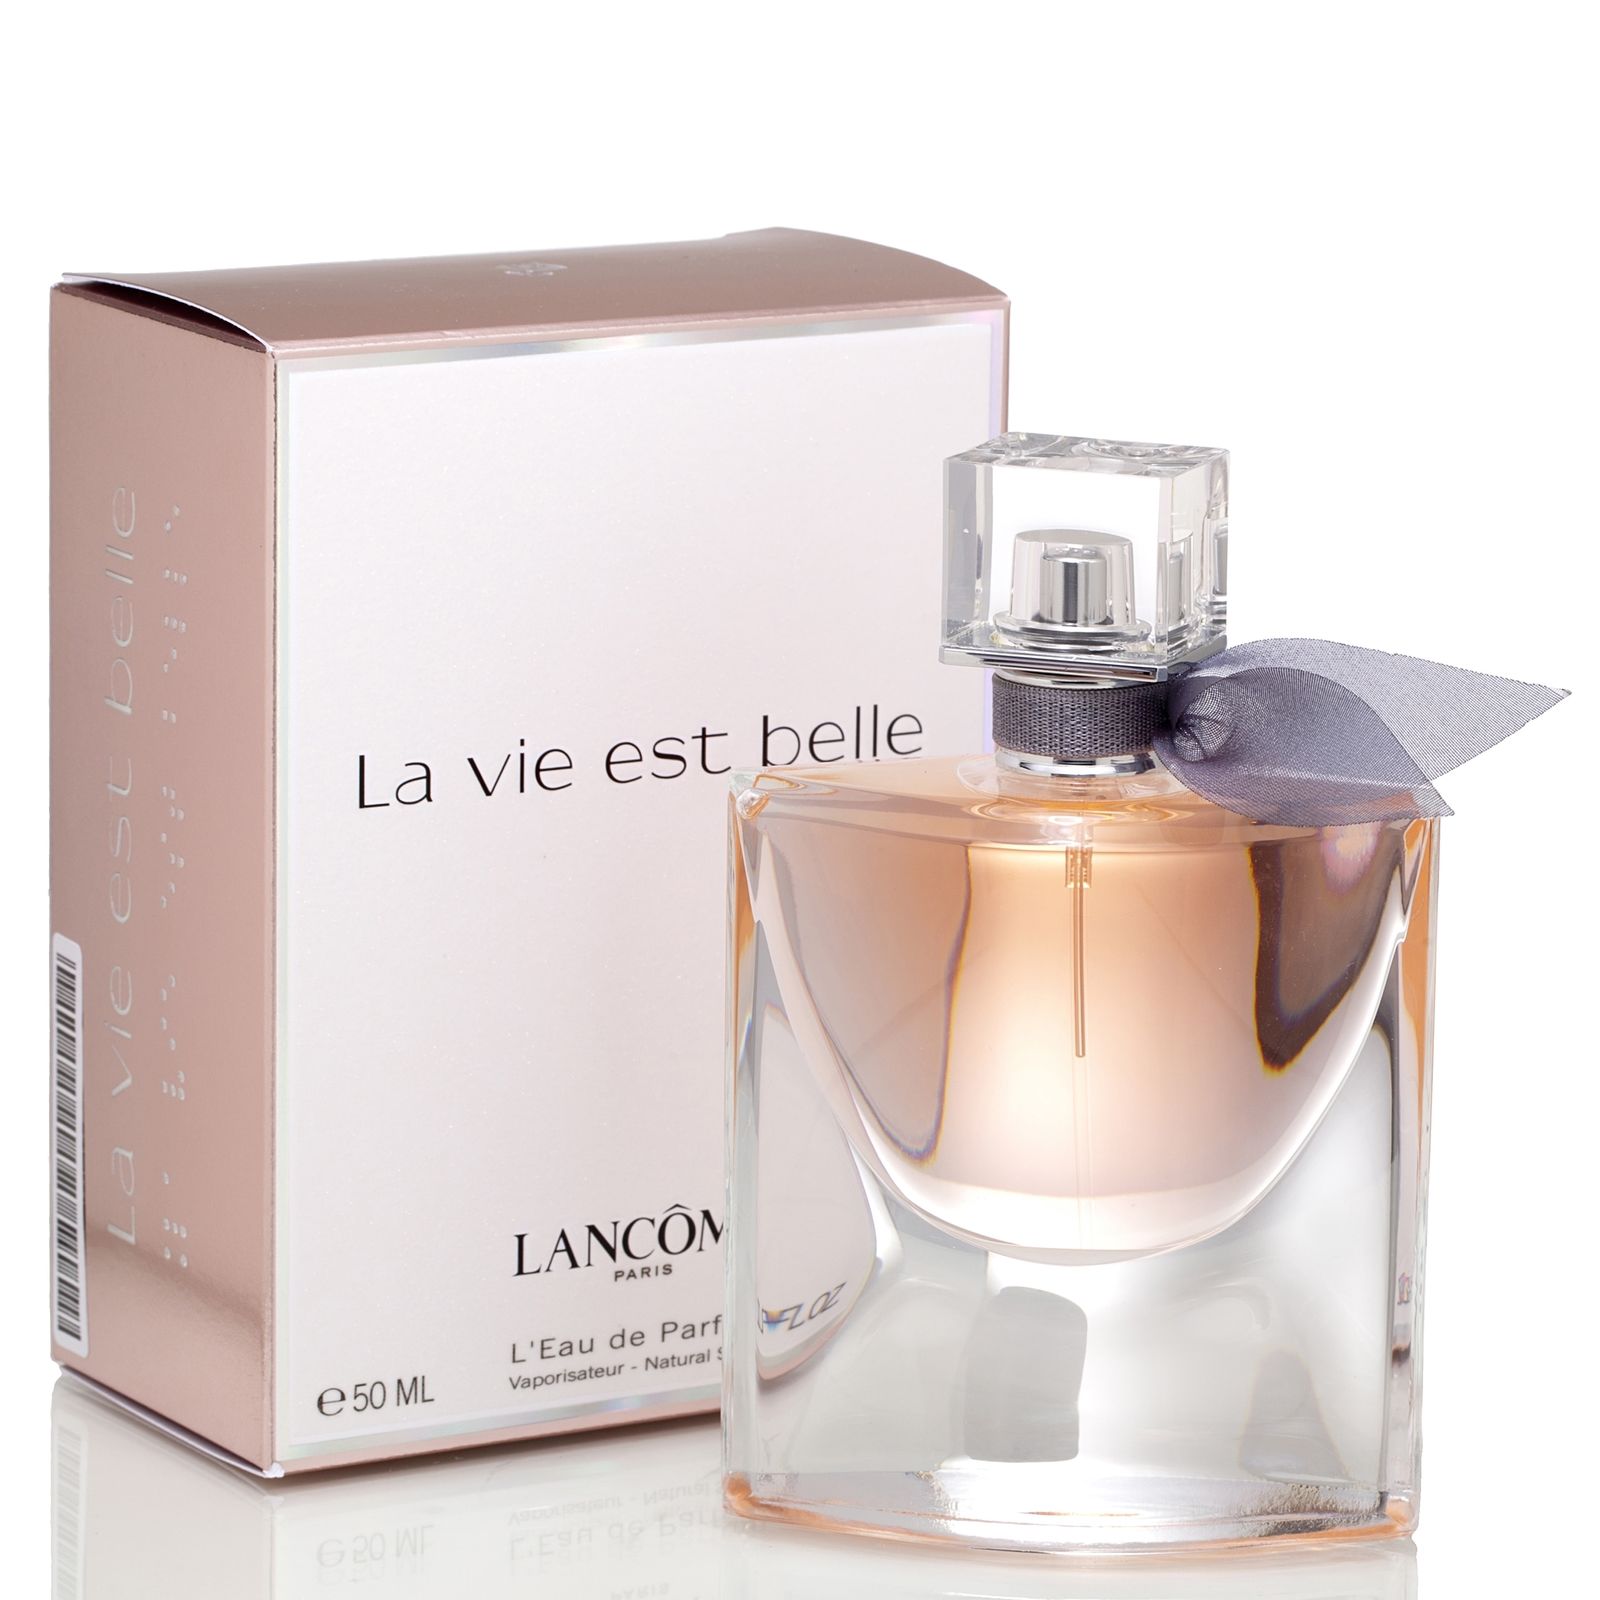 Lancome La Vie Est Belle by Lancome for Women Eau de Parfum Spray 1.7 oz